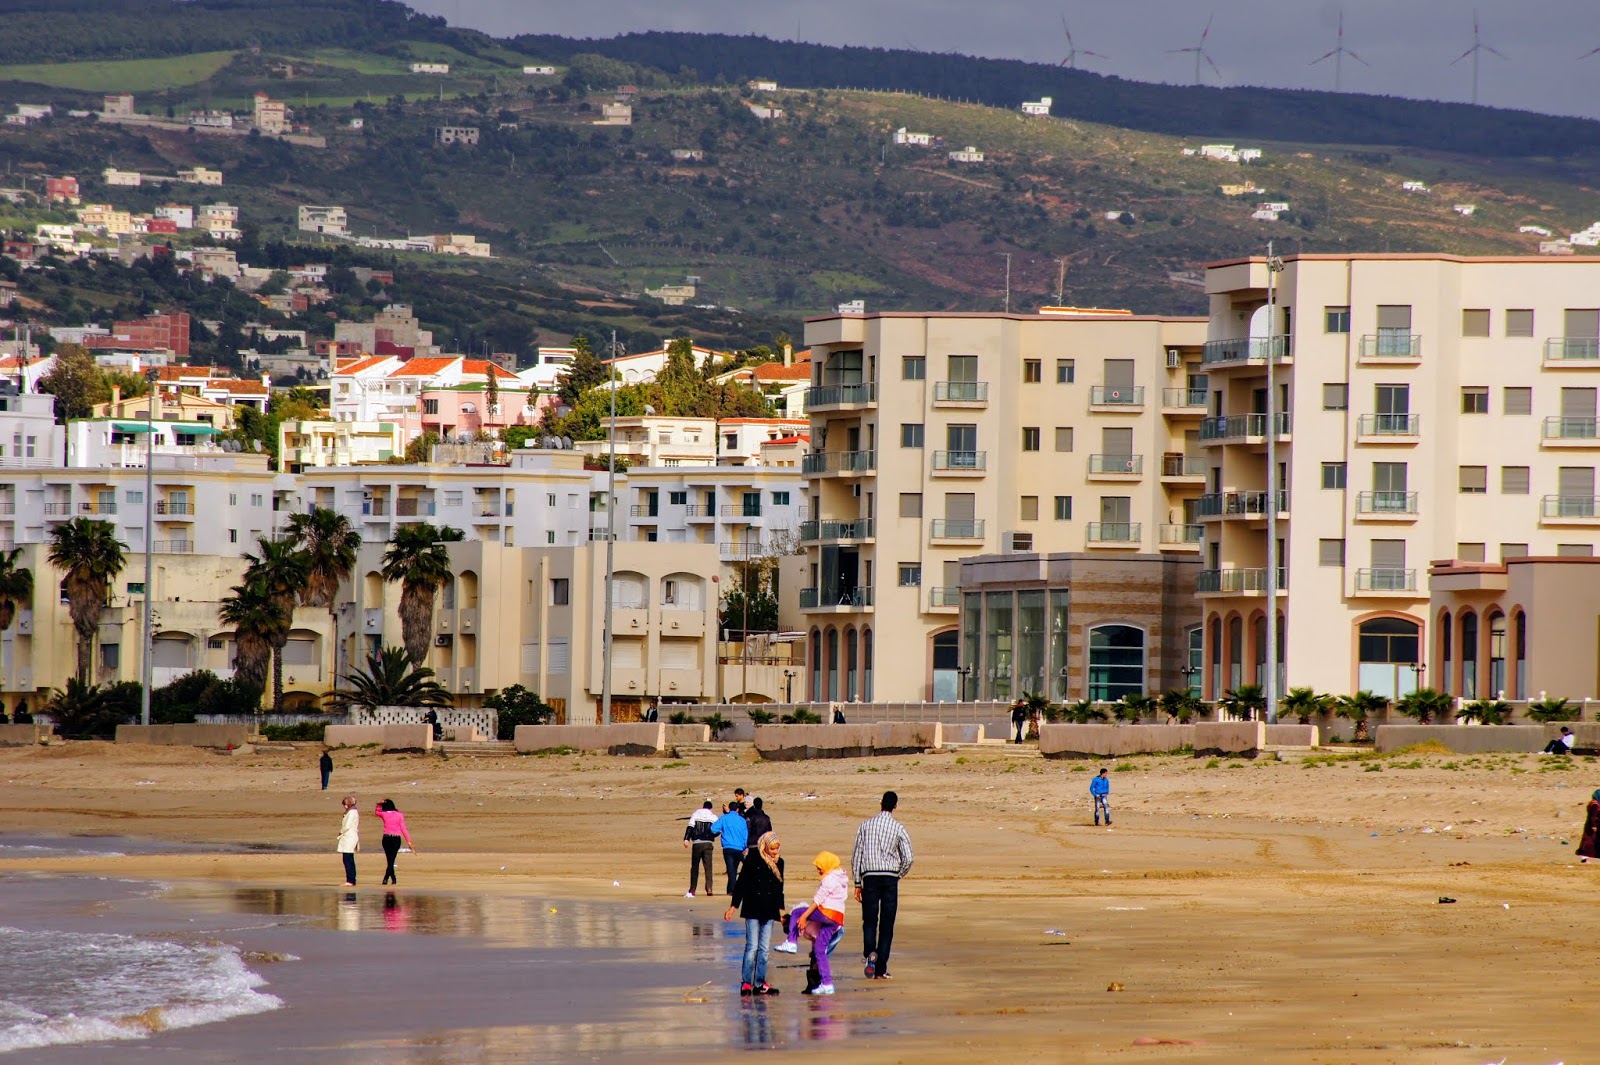 Malabata Plajı (Tangier)'in fotoğrafı imkanlar alanı